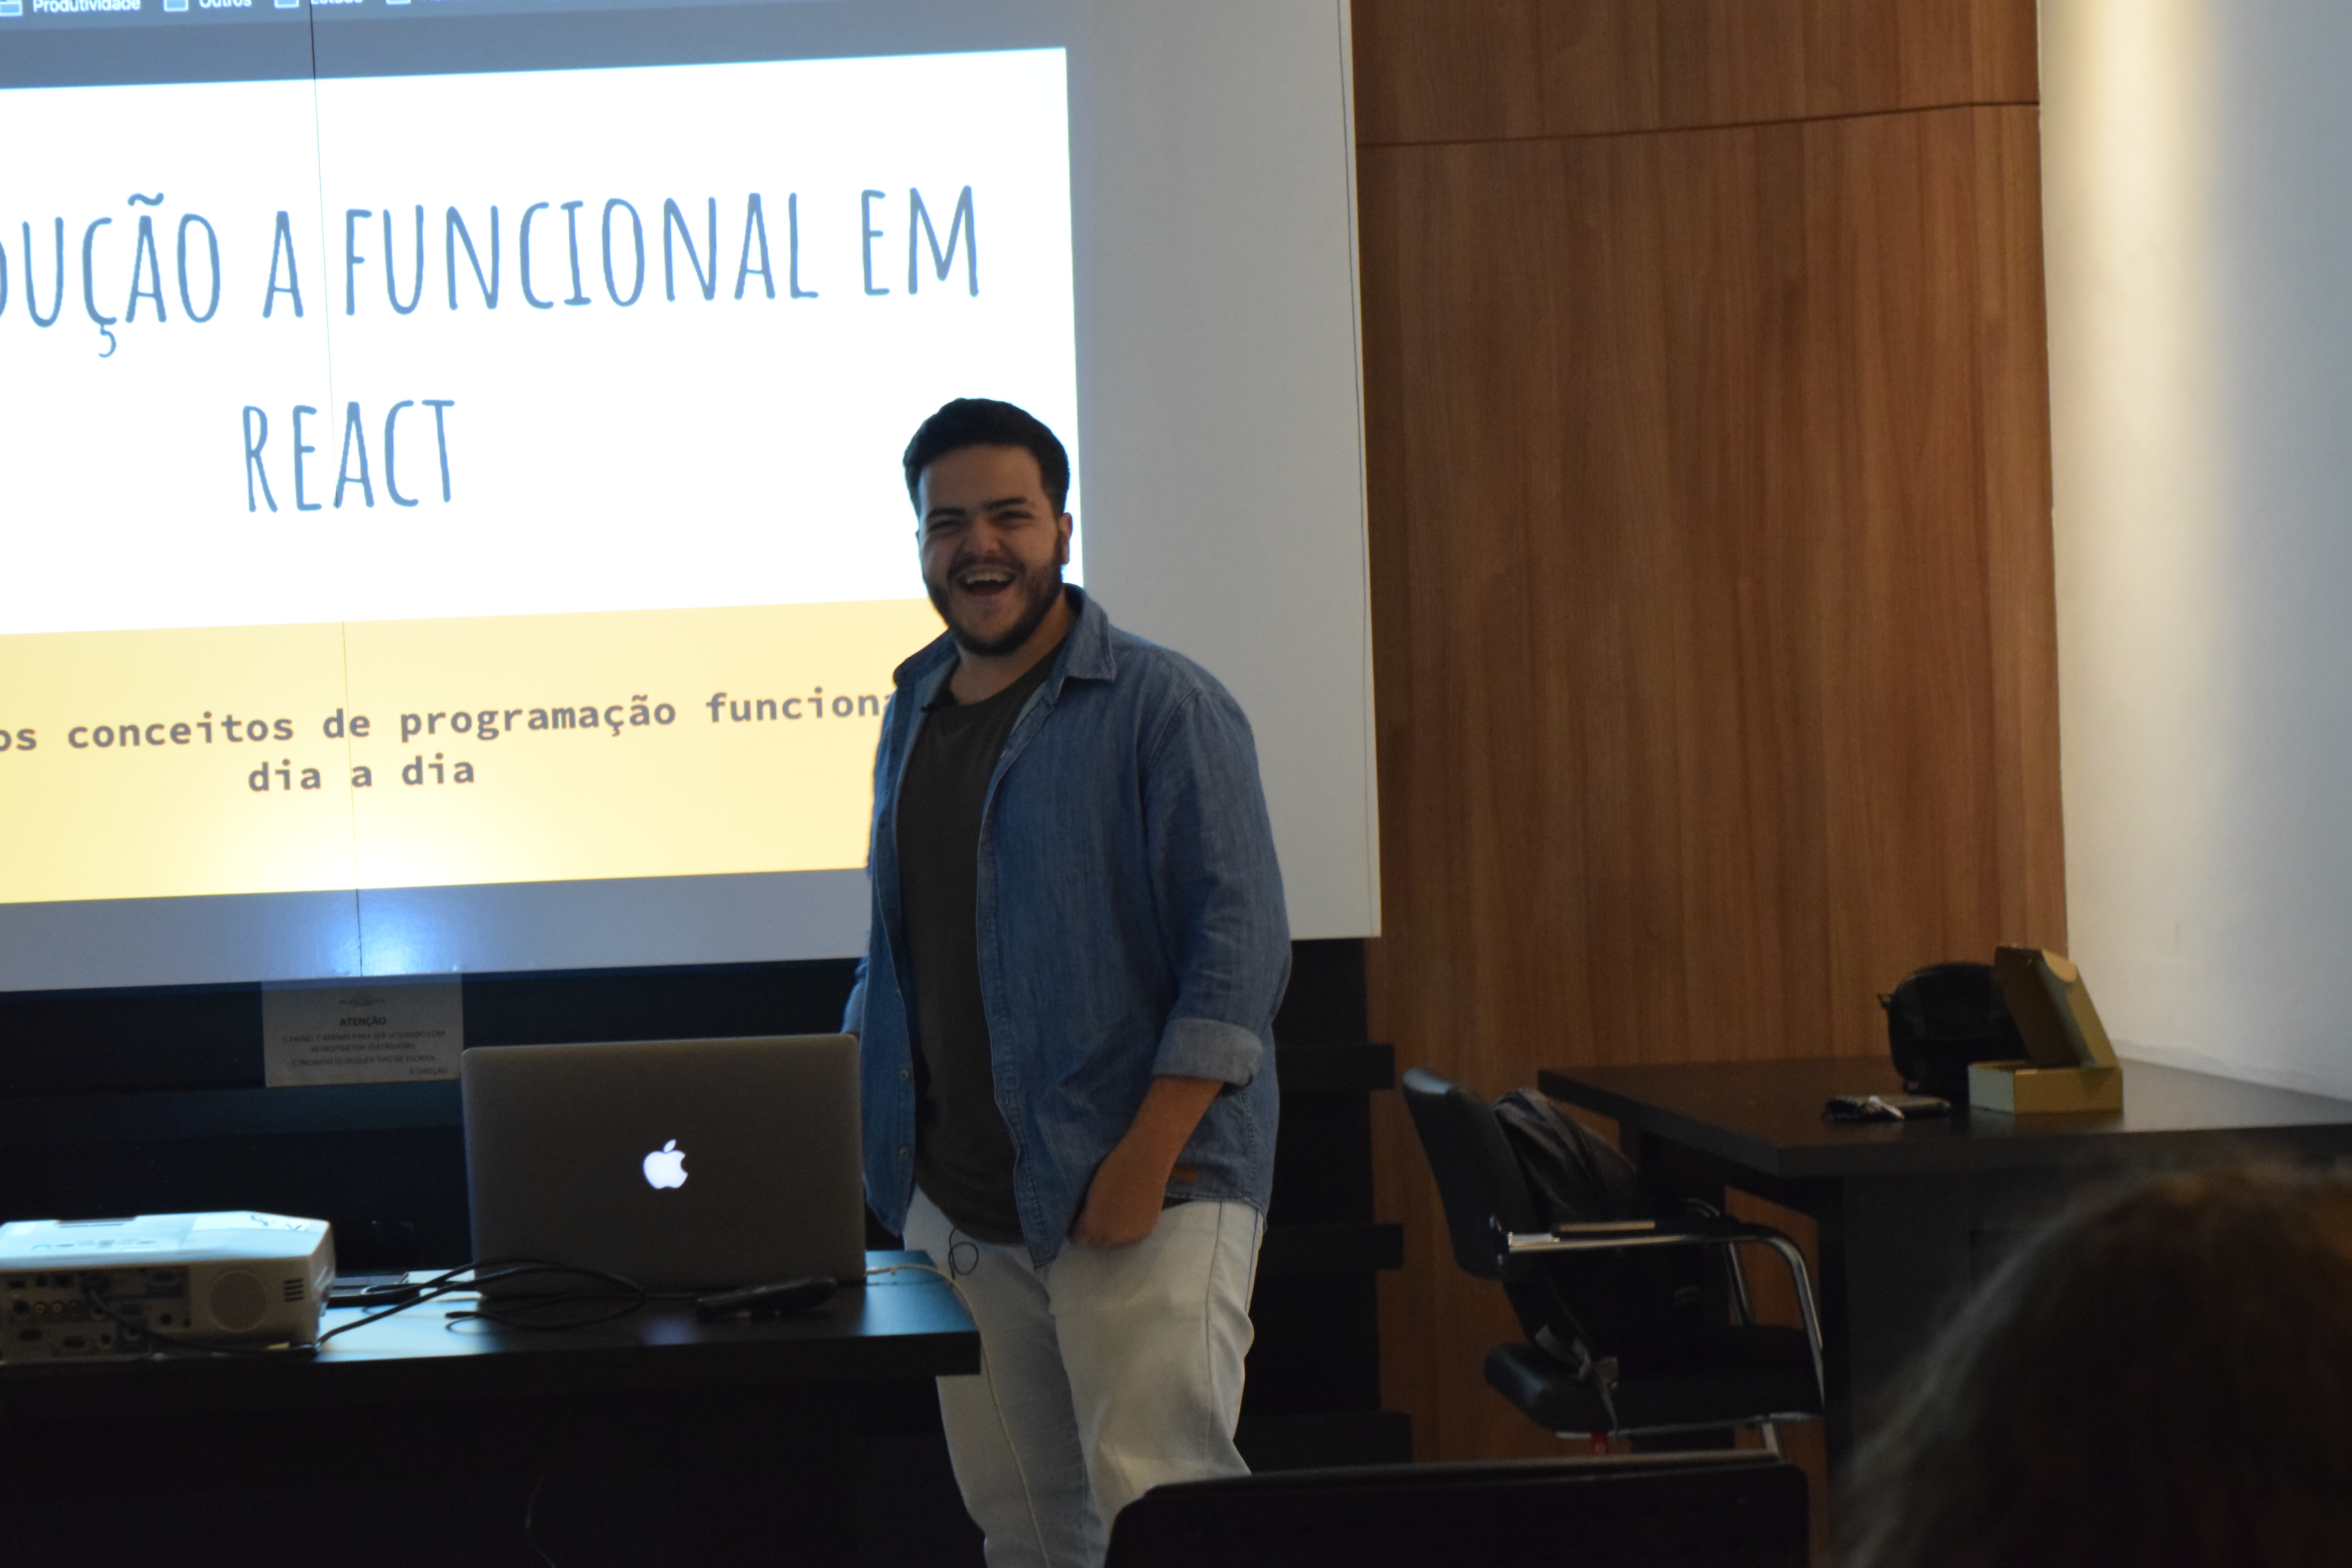 Foto minha apresentando uma palestra sobre "Introdução a funcional em React"